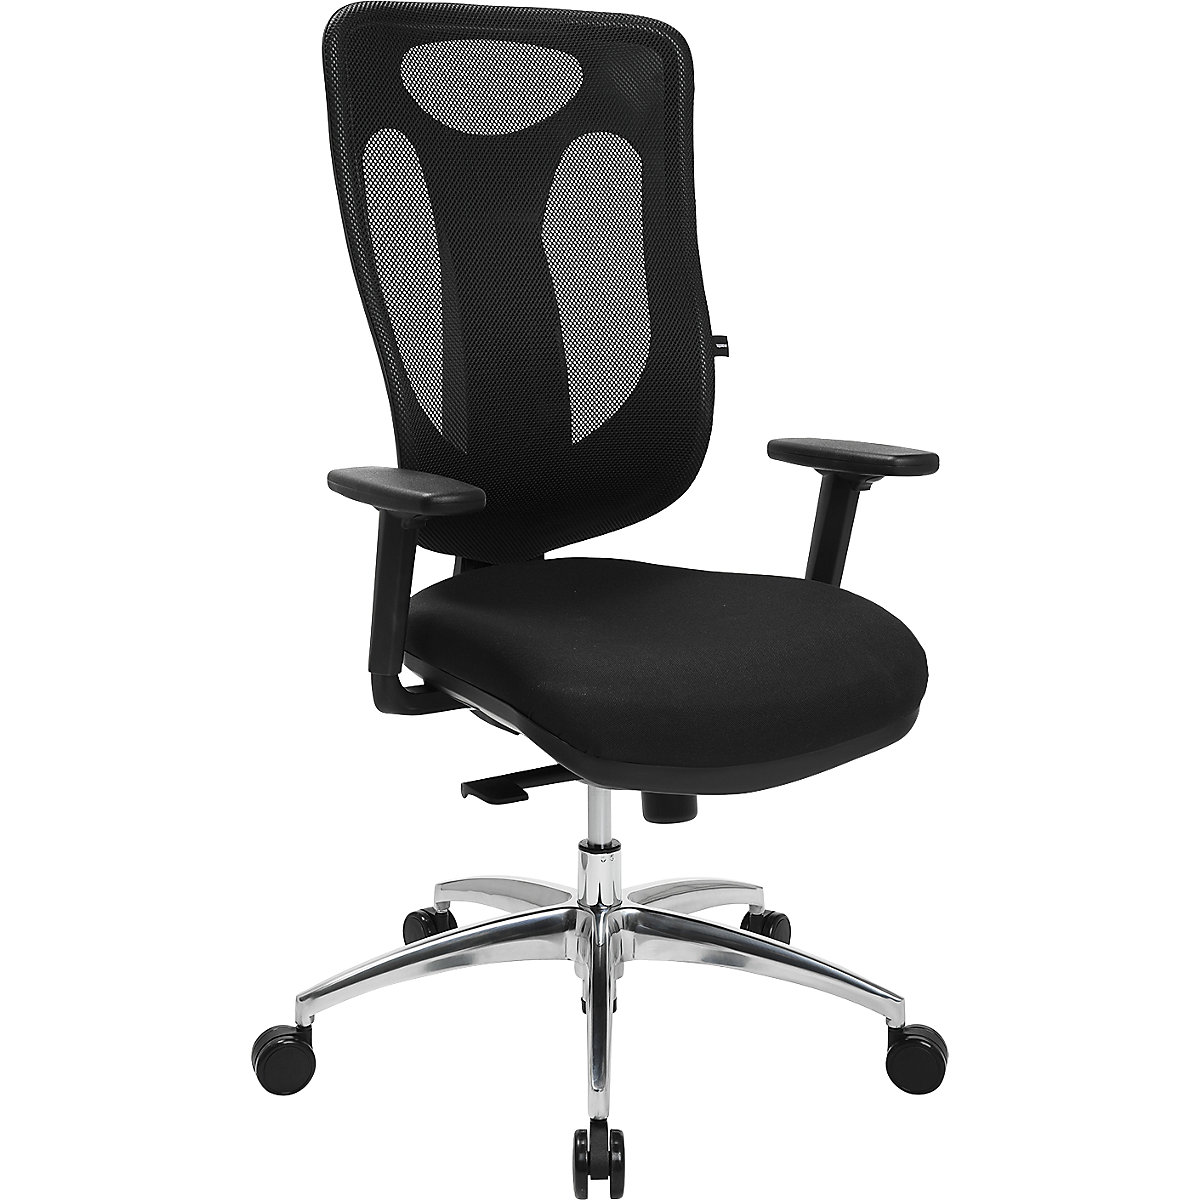 NET PRO 100 AL office swivel chair - Topstar